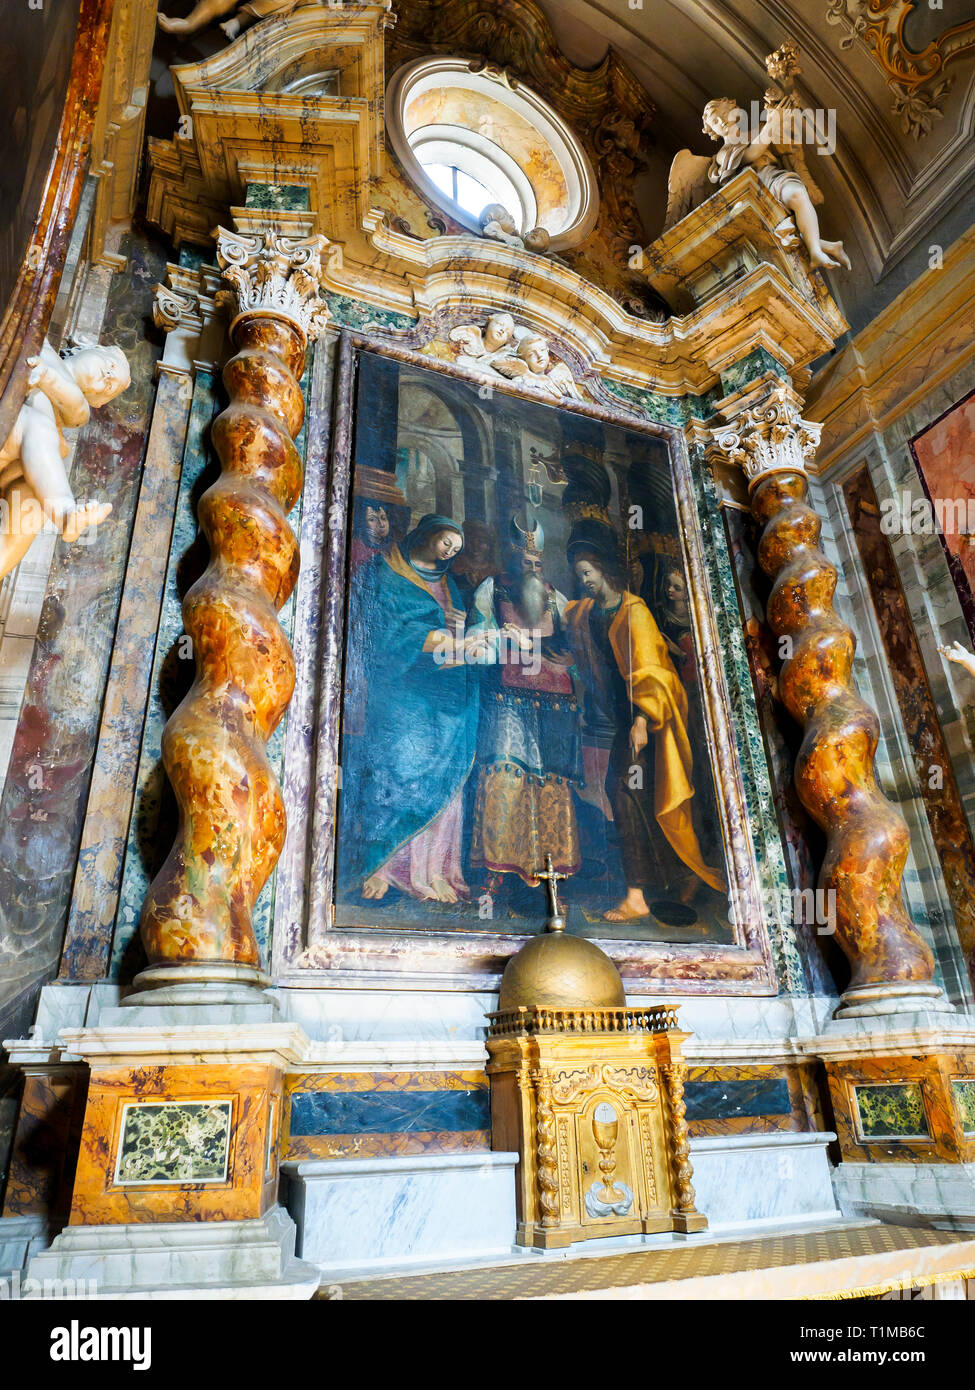 Lo sposalizio della Vergine (The marriage of the Virgin) by Pietro Vannucci known as 'il Perugino' (1450 - 1523) - St Gervasius and St Protasius Church, Città della Pieve, Perugia, Italy Stock Photo